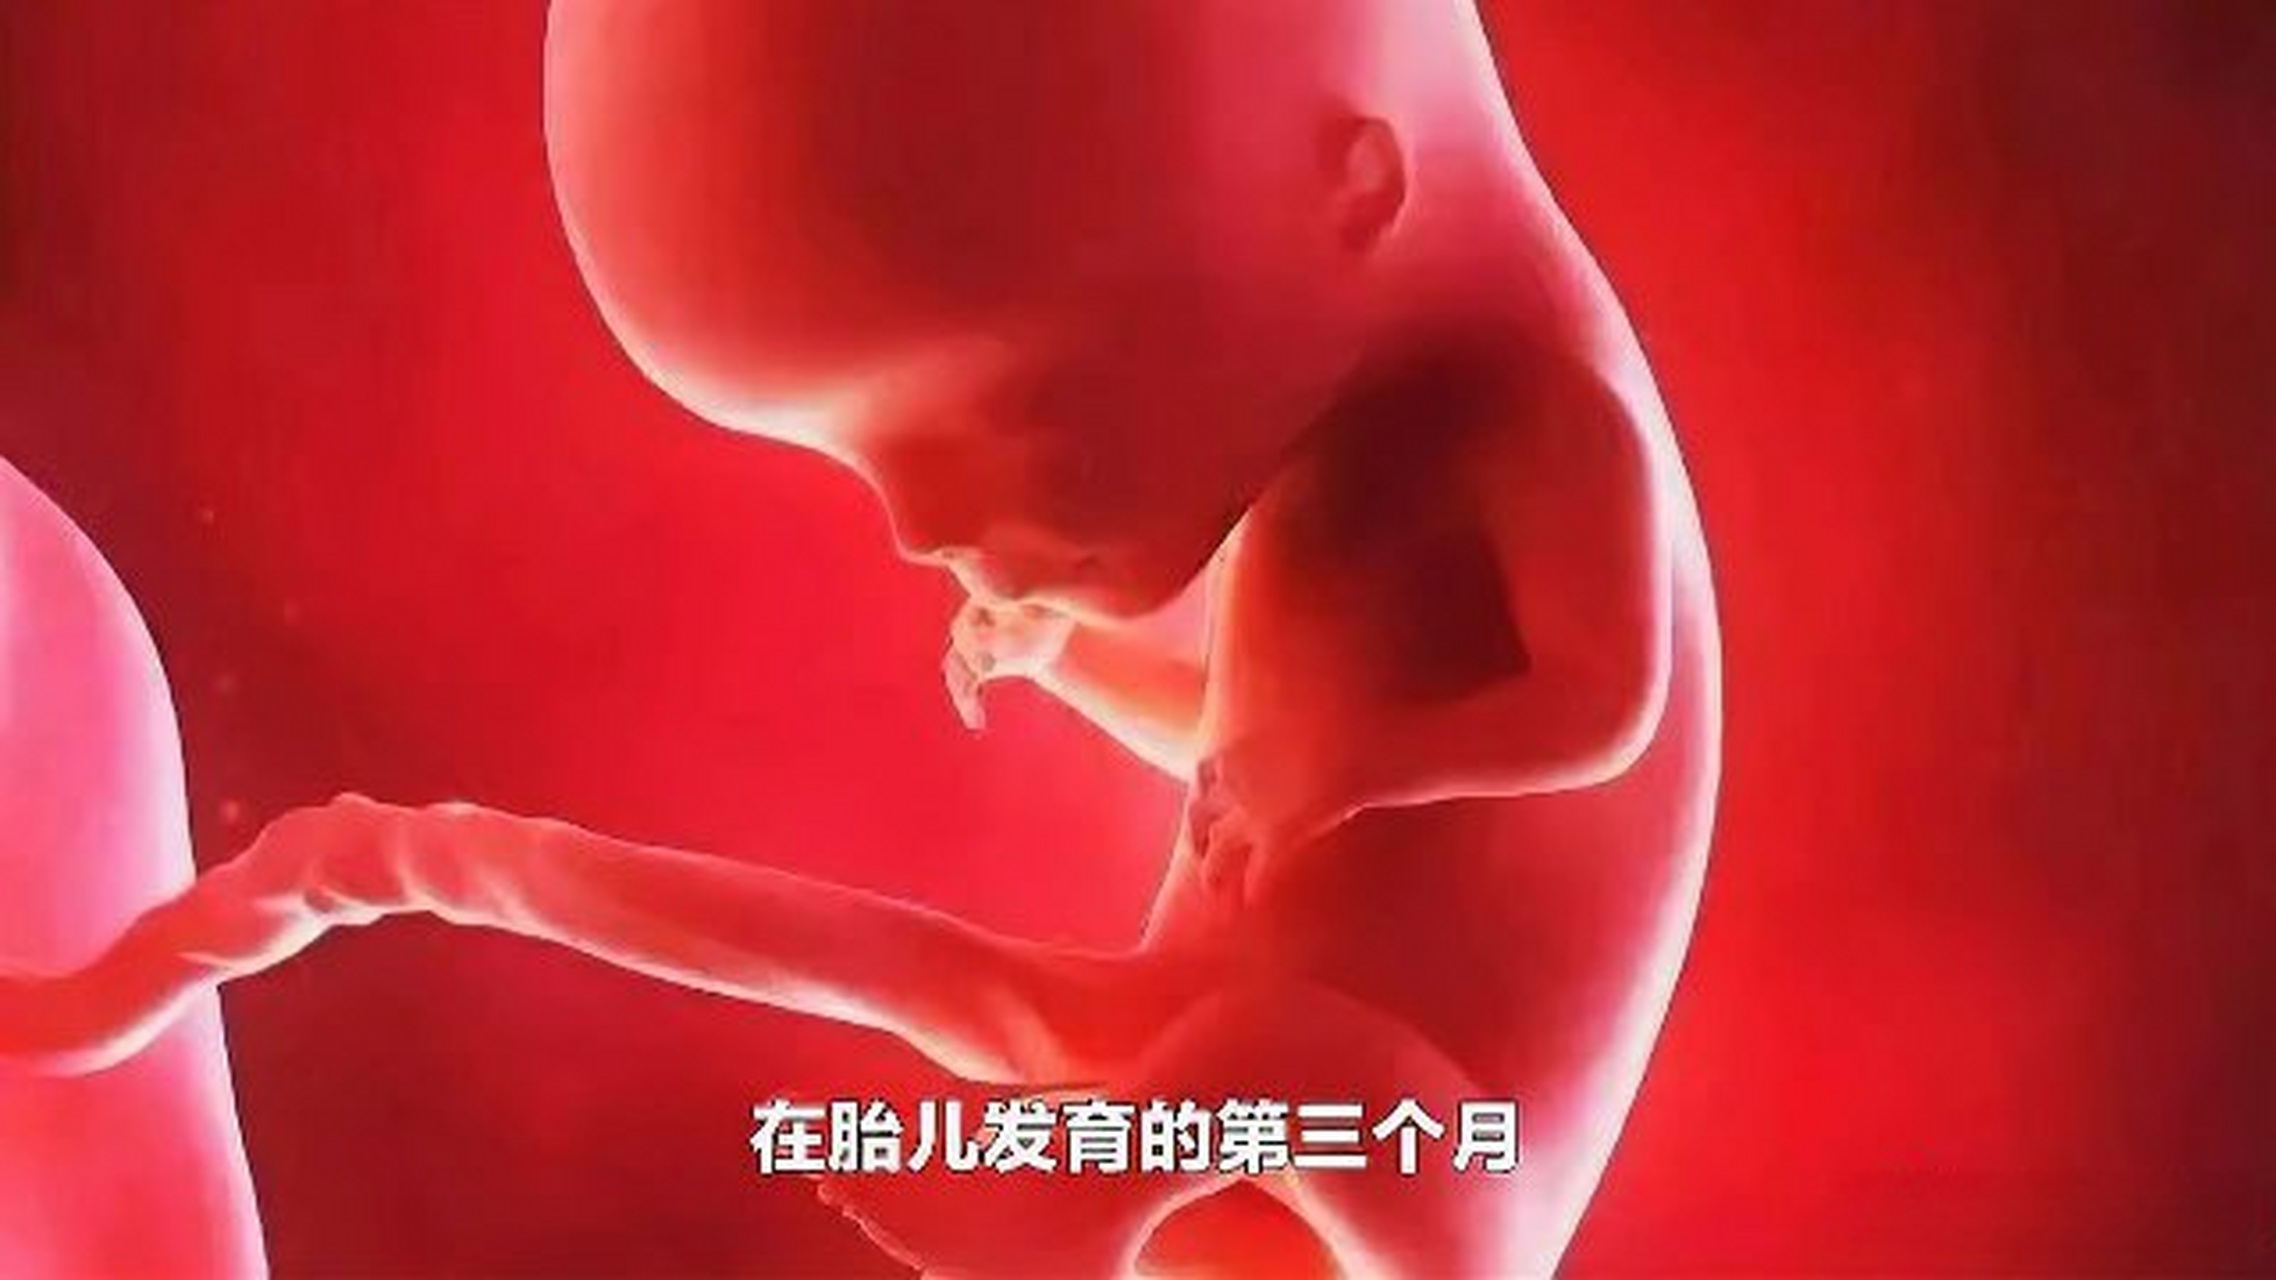 这篇视频很有意思《胎儿发育的第三个月》